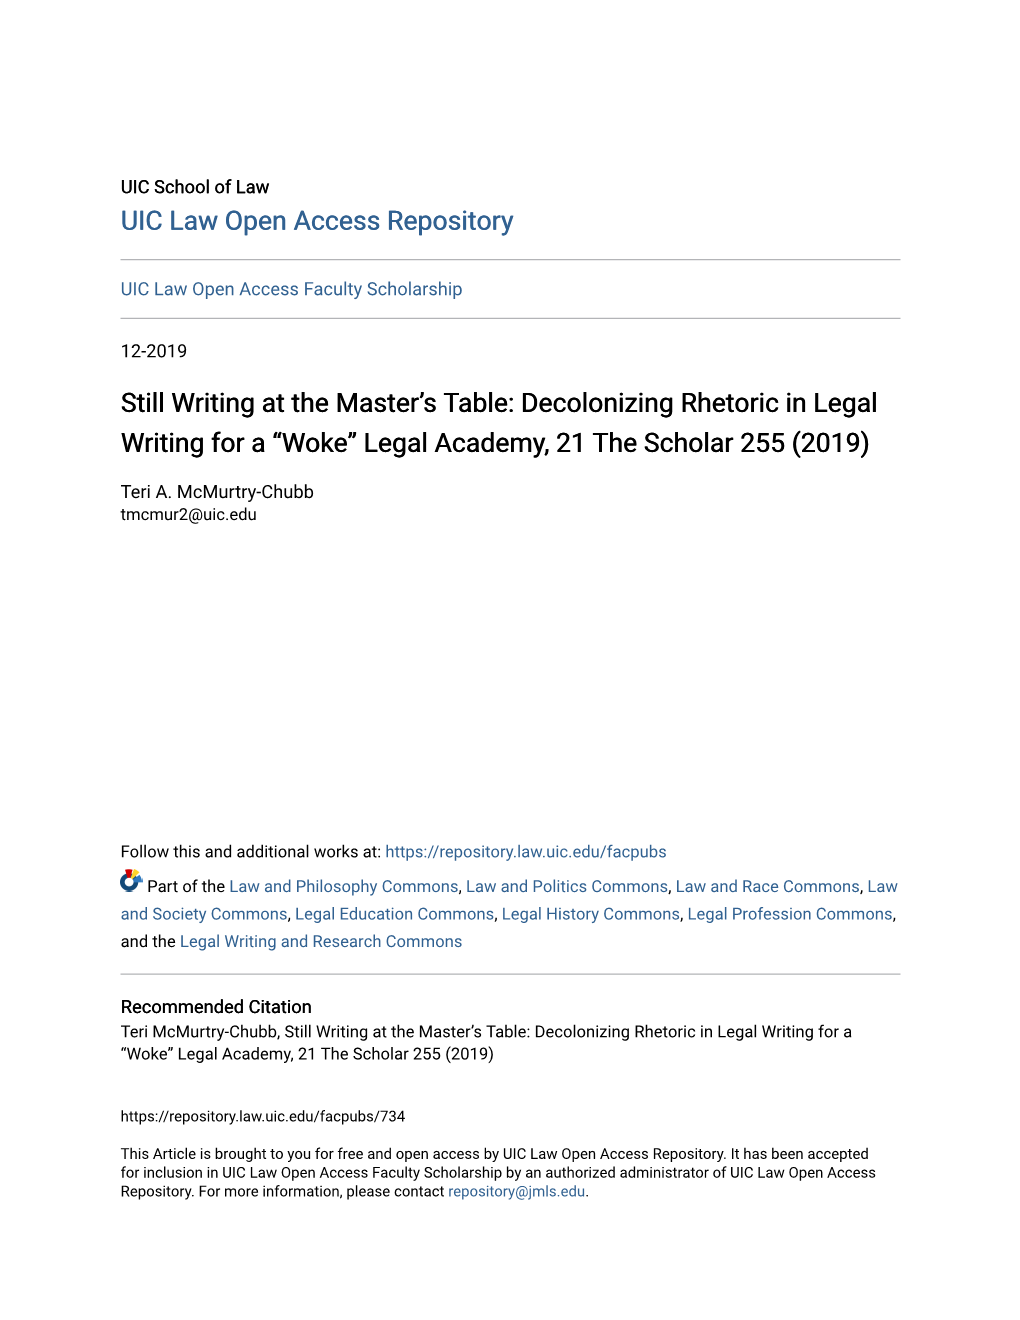 Decolonizing Rhetoric in Legal Writing for a “Woke” Legal Academy, 21 the Scholar 255 (2019)